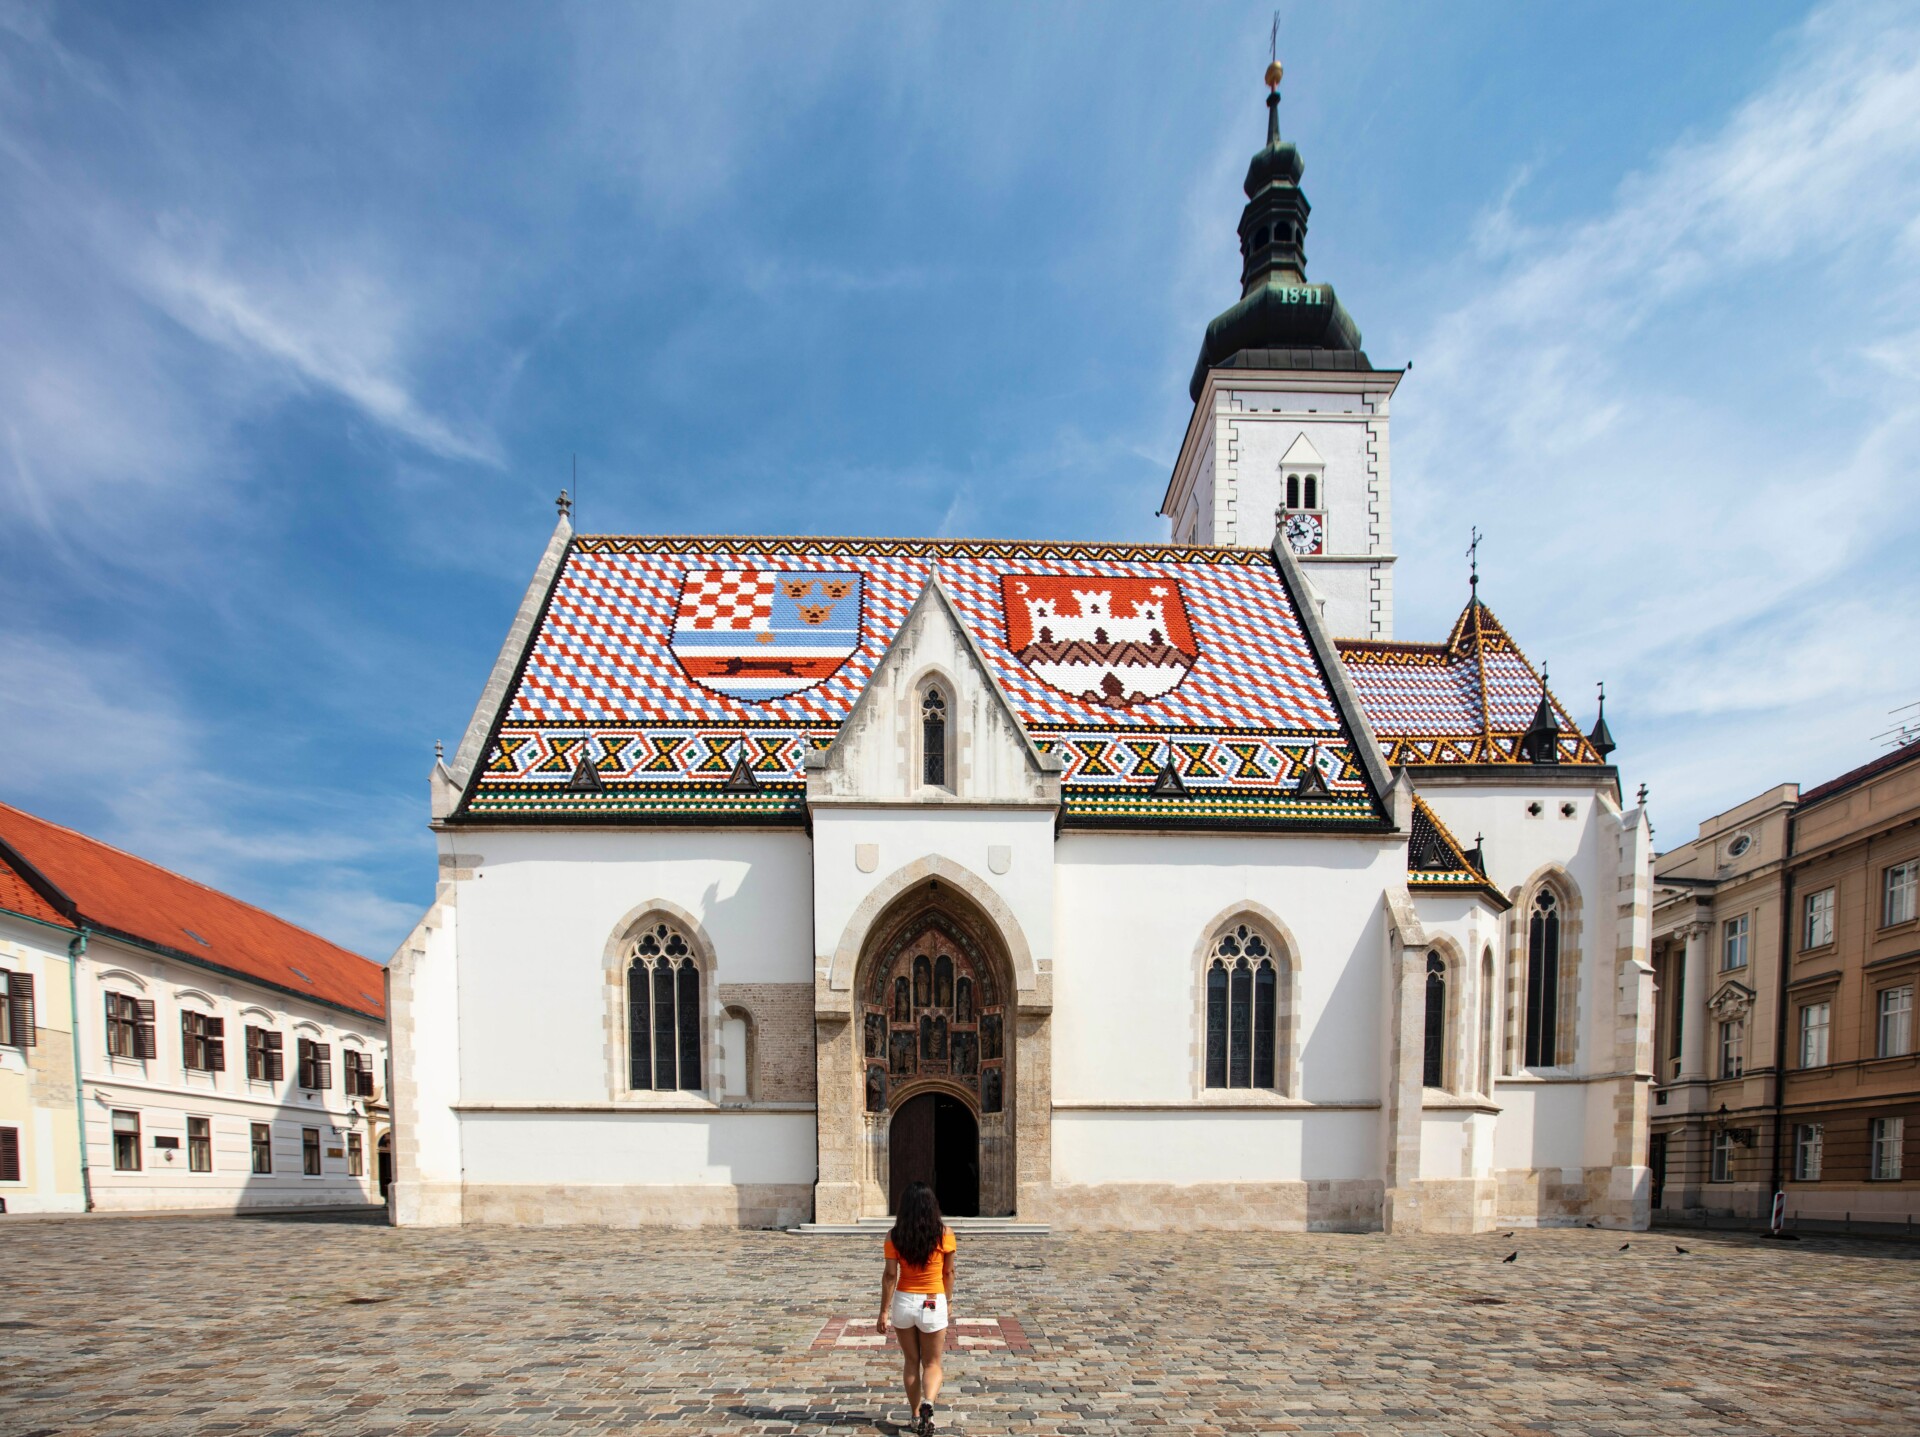 St. Mark's Church in Zagreb.